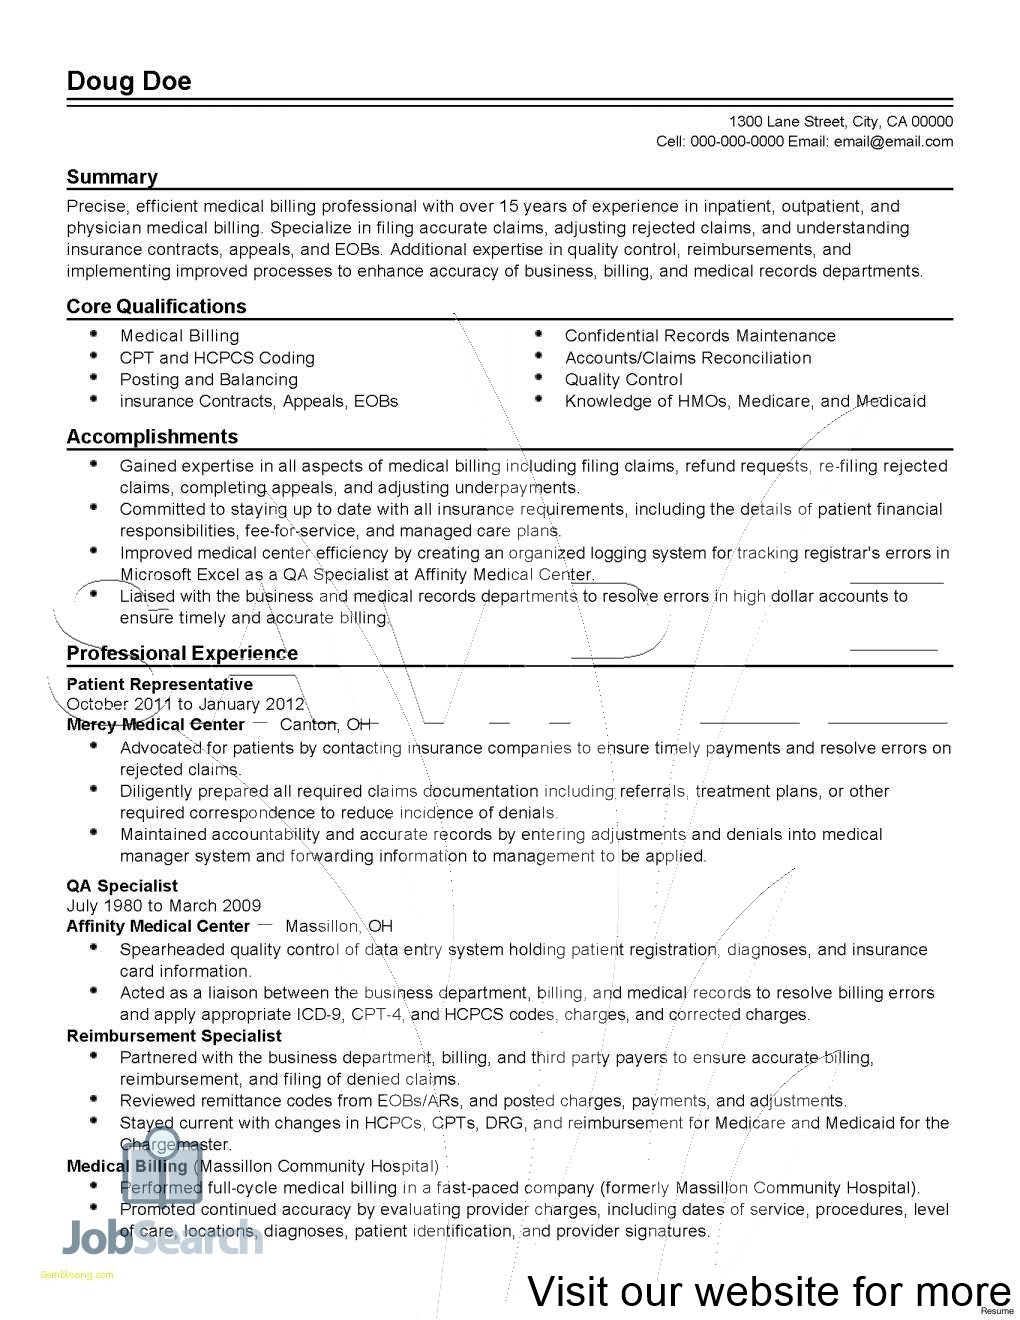 resume for medical coder resume for medical coder fresher resume for medical coder with no experience resume for medical coder with experience